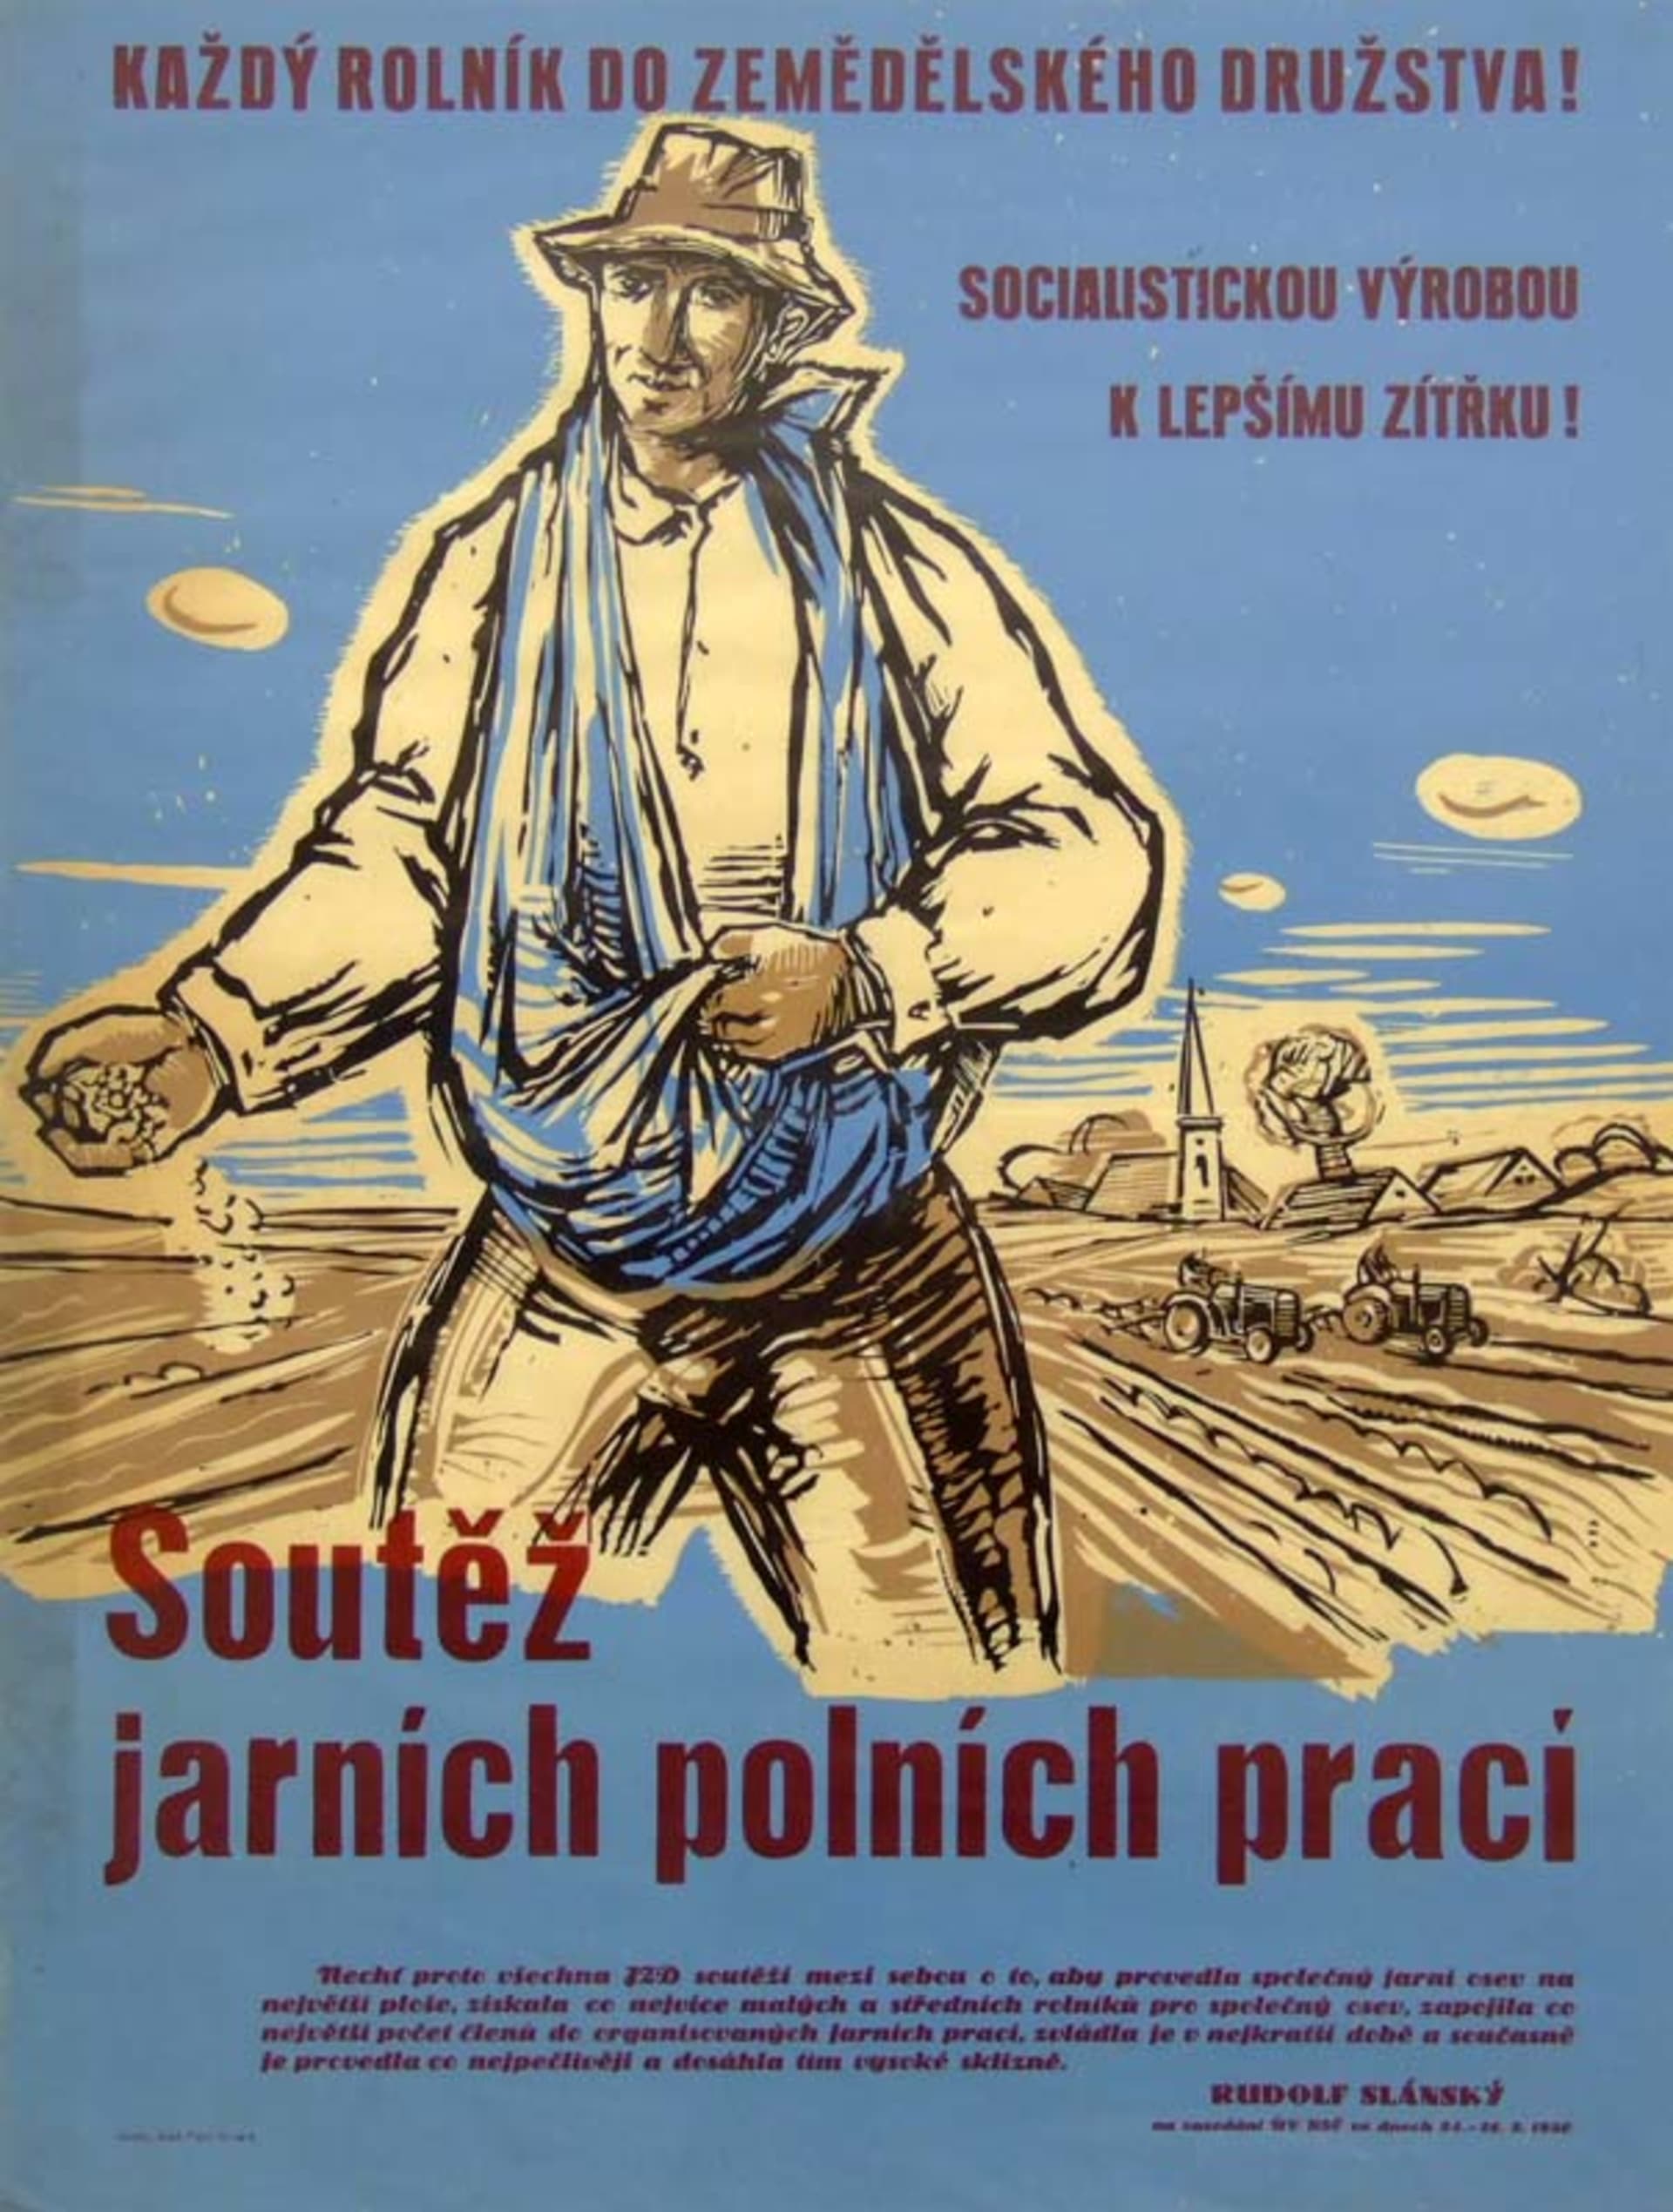 Kolektivizace - tehdy začala zhouba české krajiny